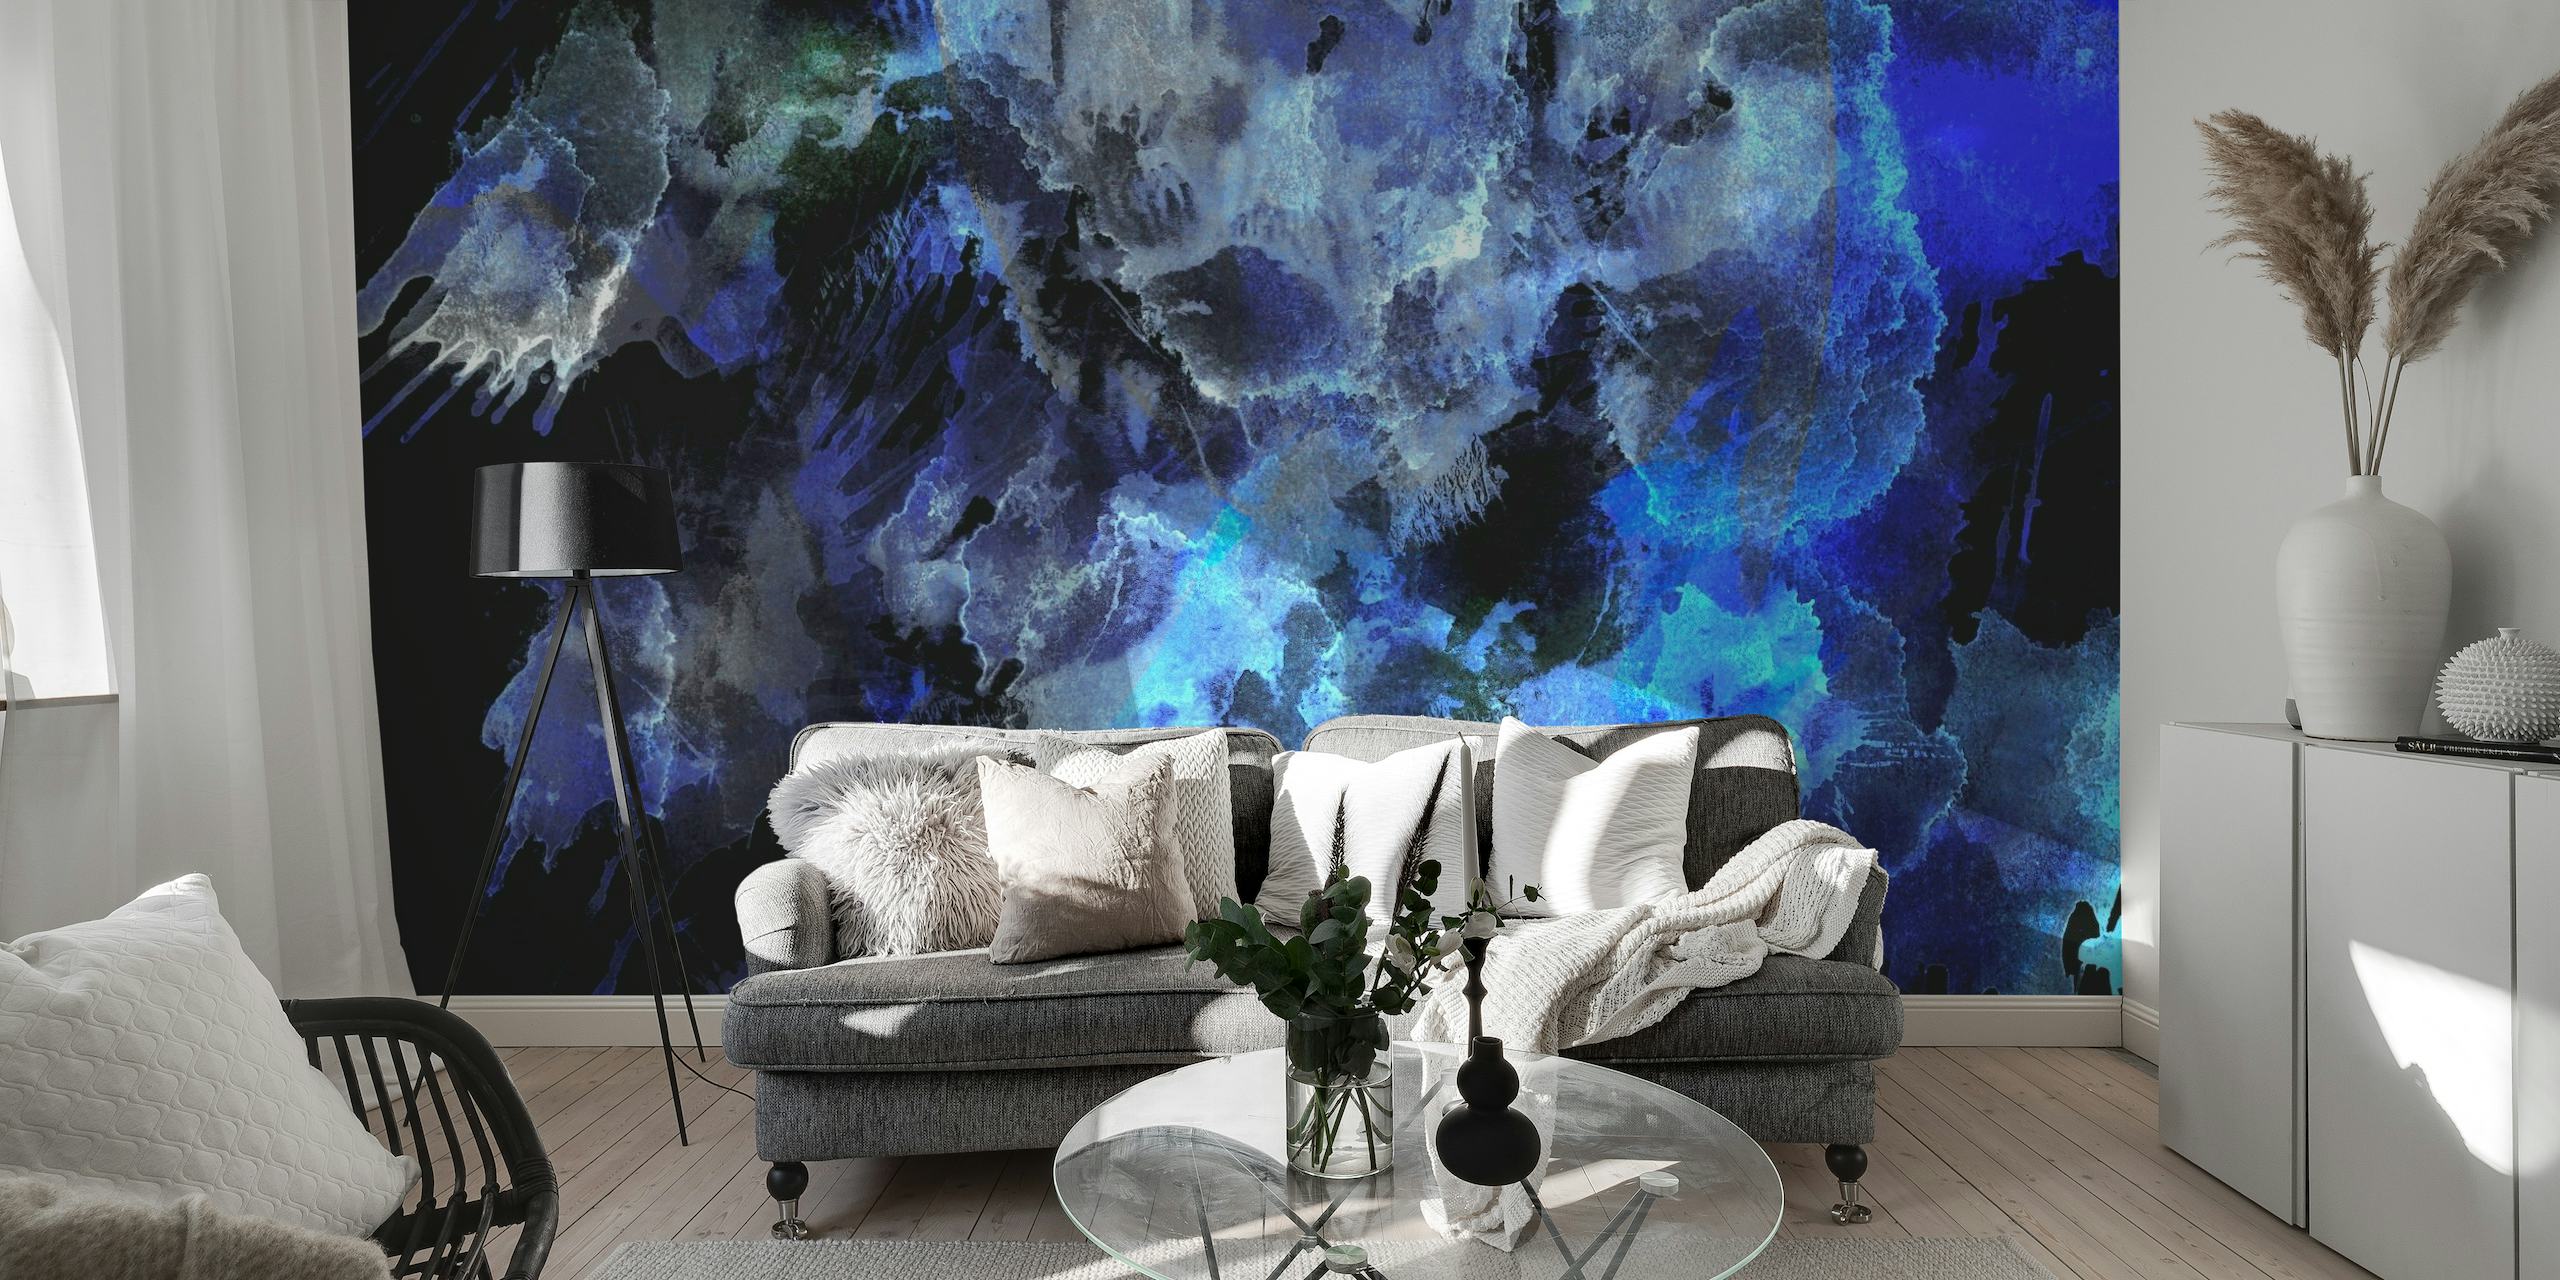 Apstraktni ponoćno plavi i crni akvarel zidni mural koji stvara oceanski ambijent